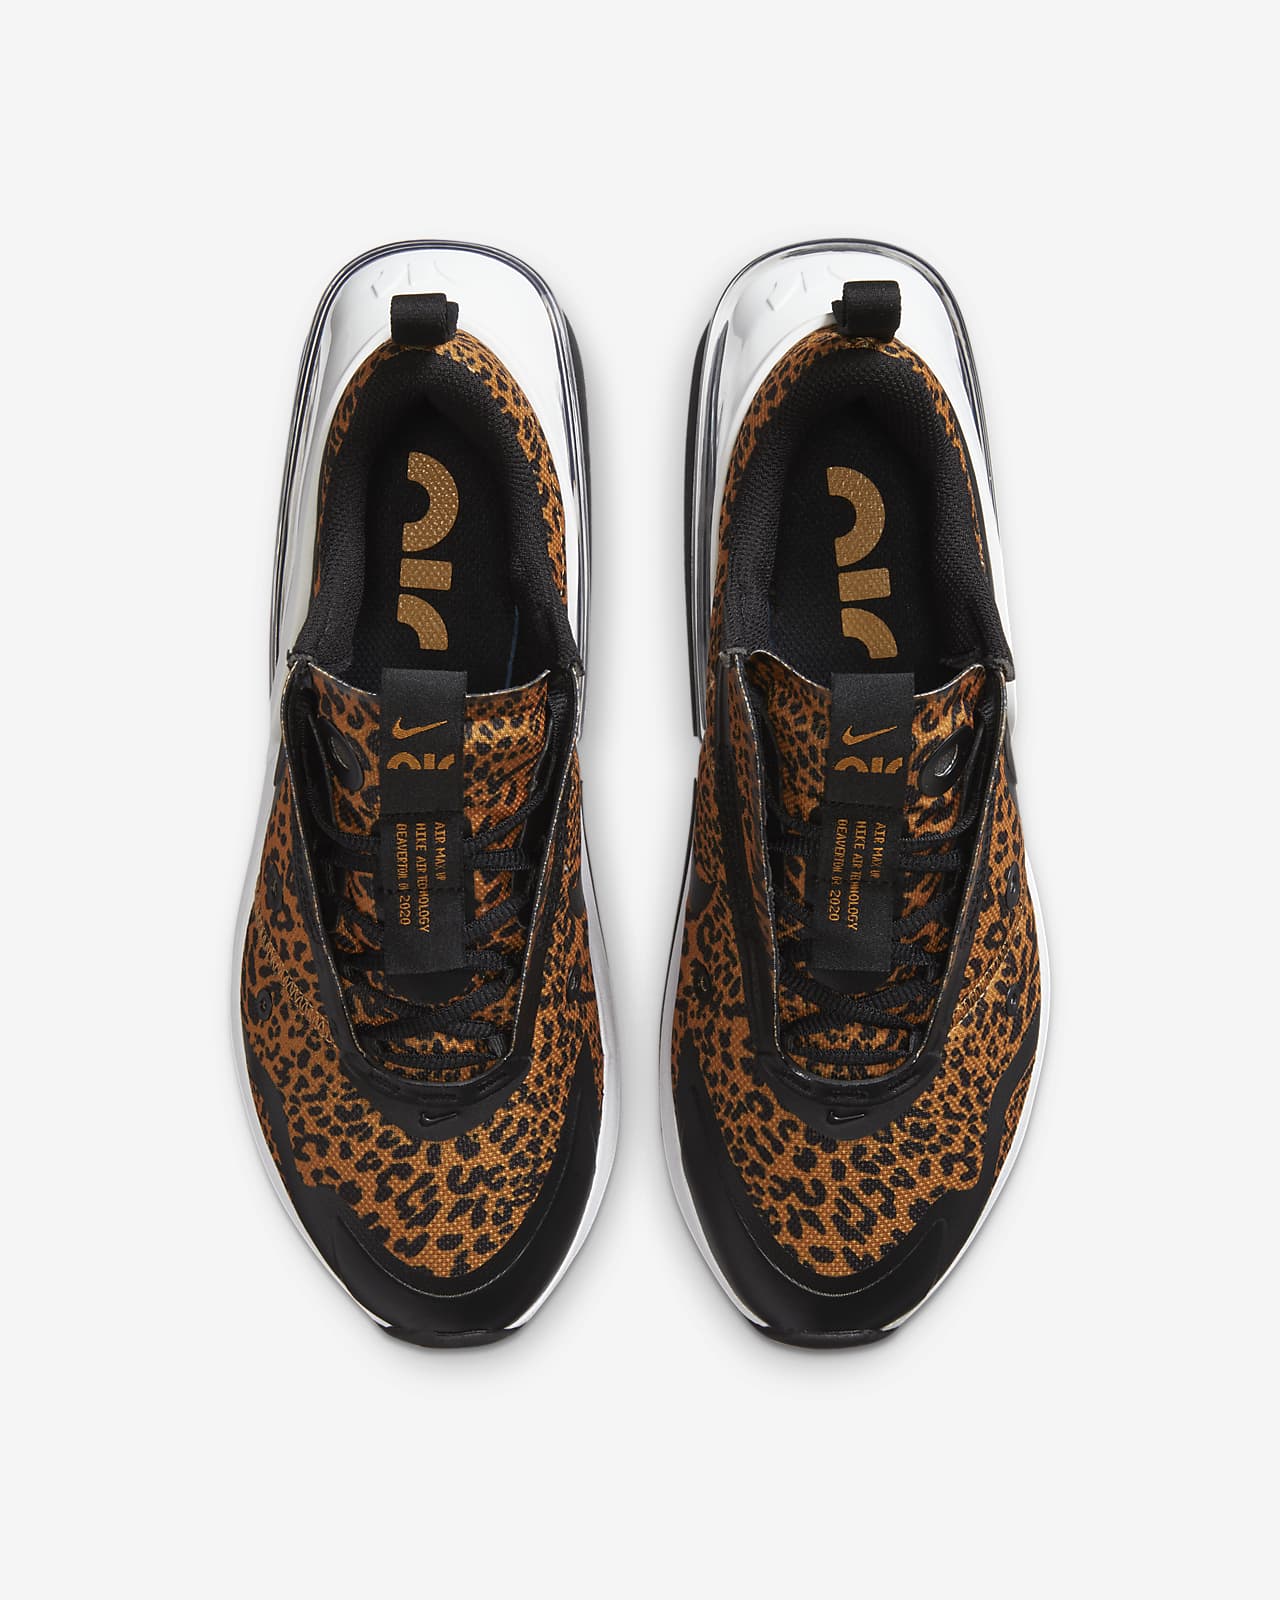 animal print nike shoes